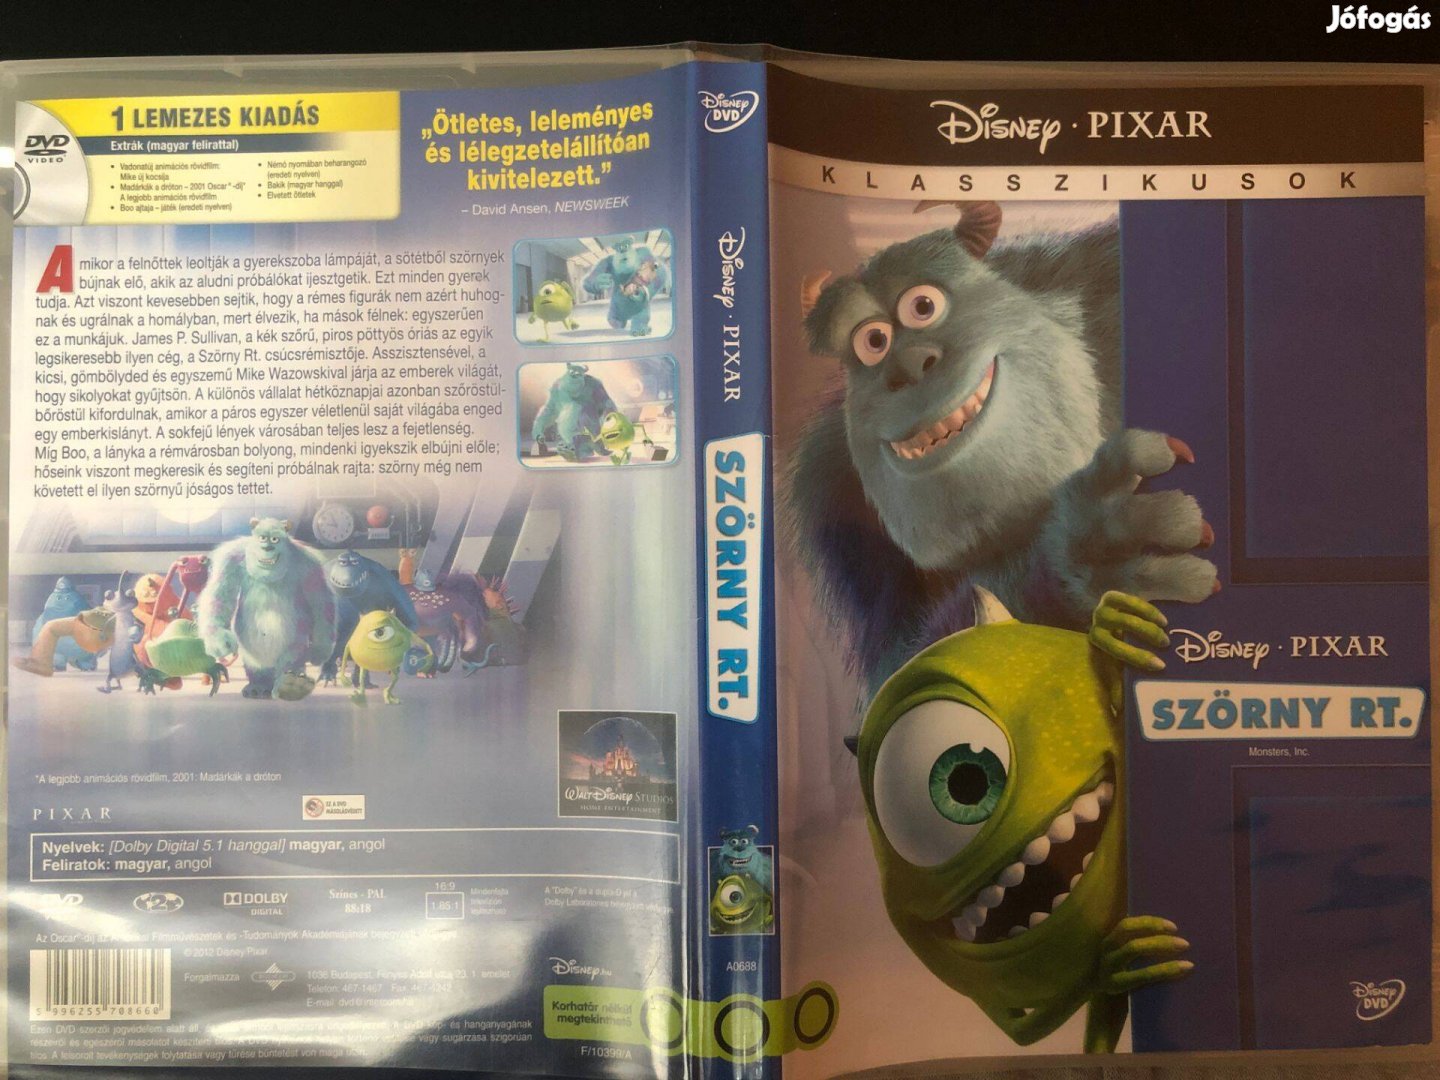 Szörny Rt. DVD Disney Pixar